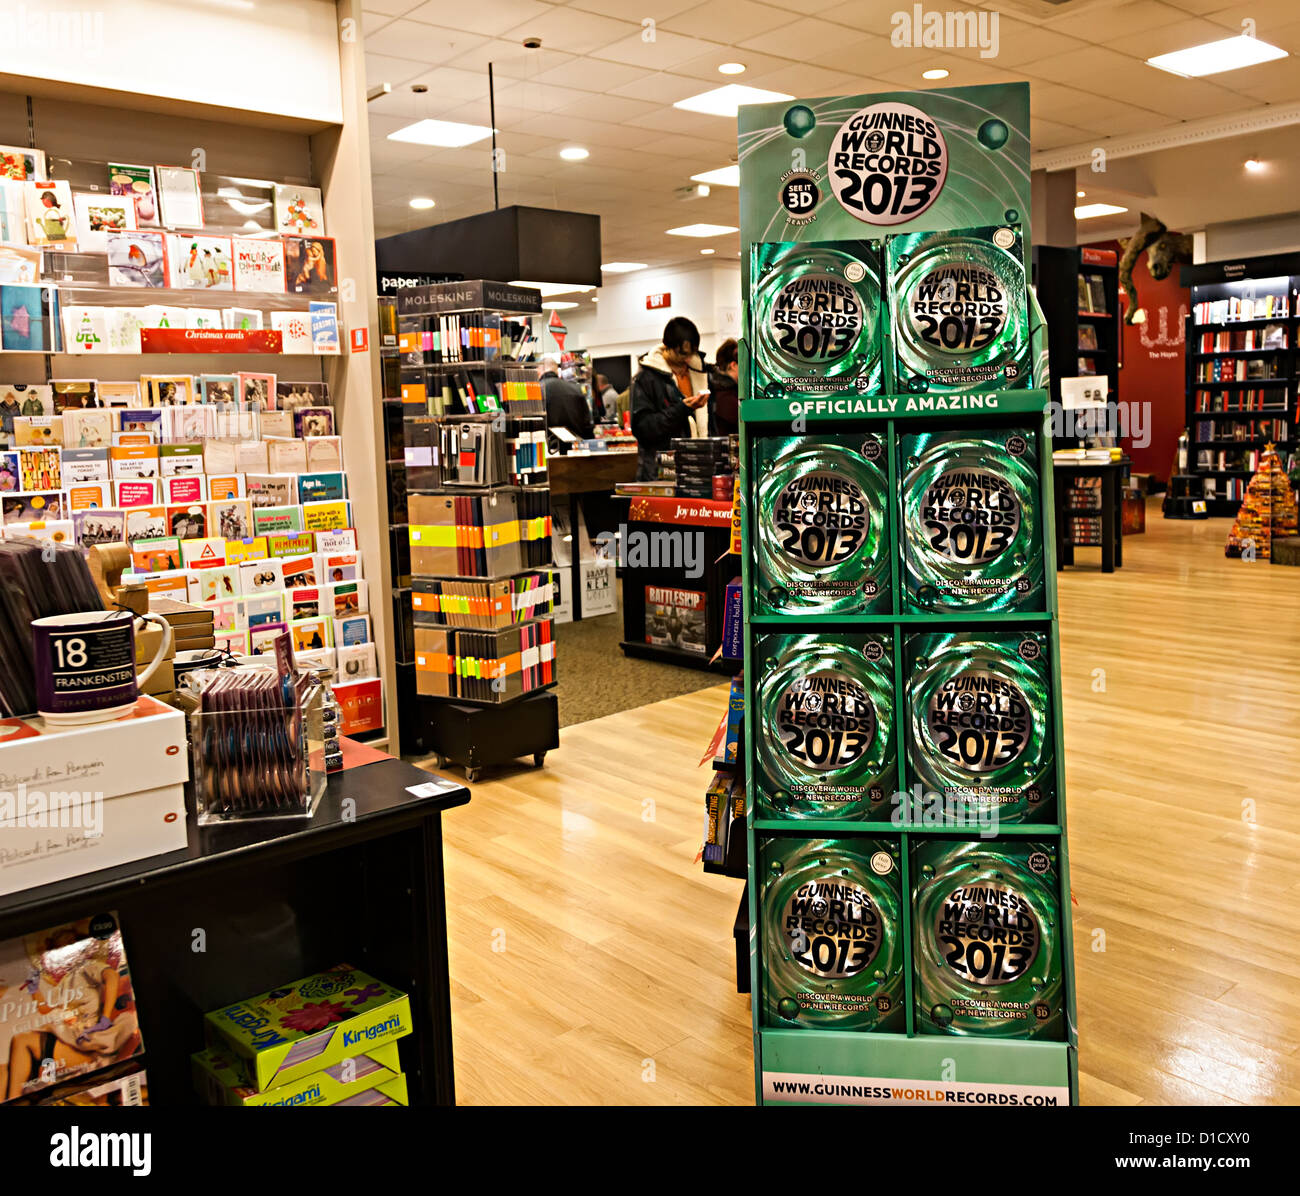 Guinness World Records 2013 prenota in stand in vendita nel negozio, Cardiff Wales, Regno Unito Foto Stock